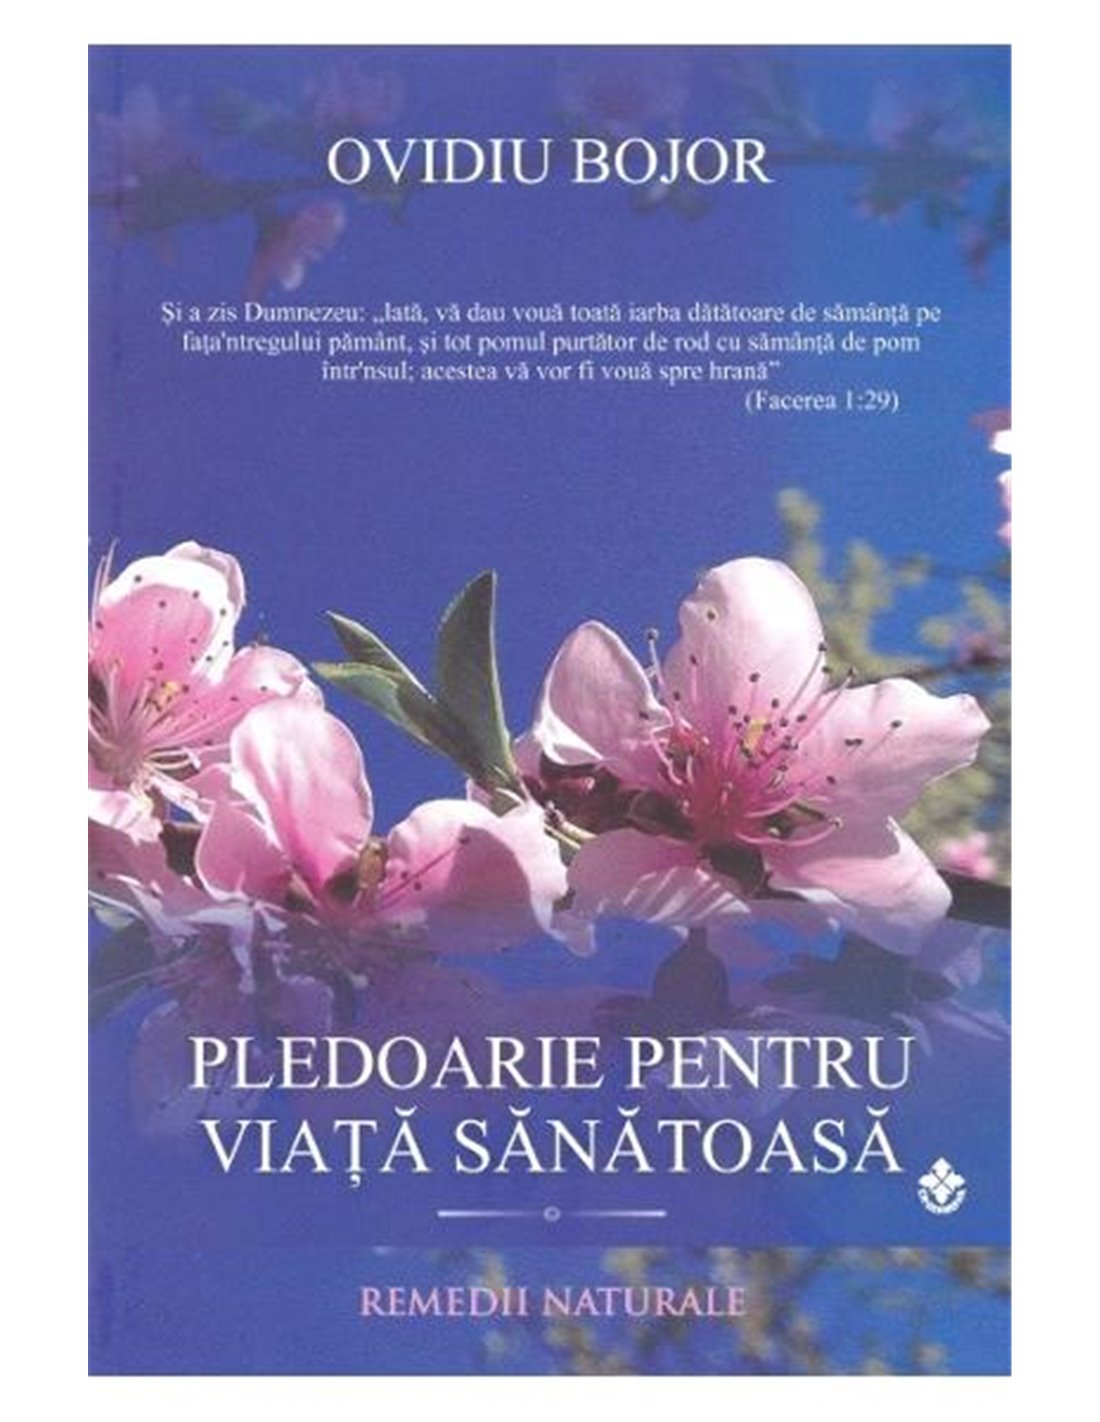 Pledoarie pentru o viaţă sănătoasă - Ovidiu Bojor | Editura Dharana